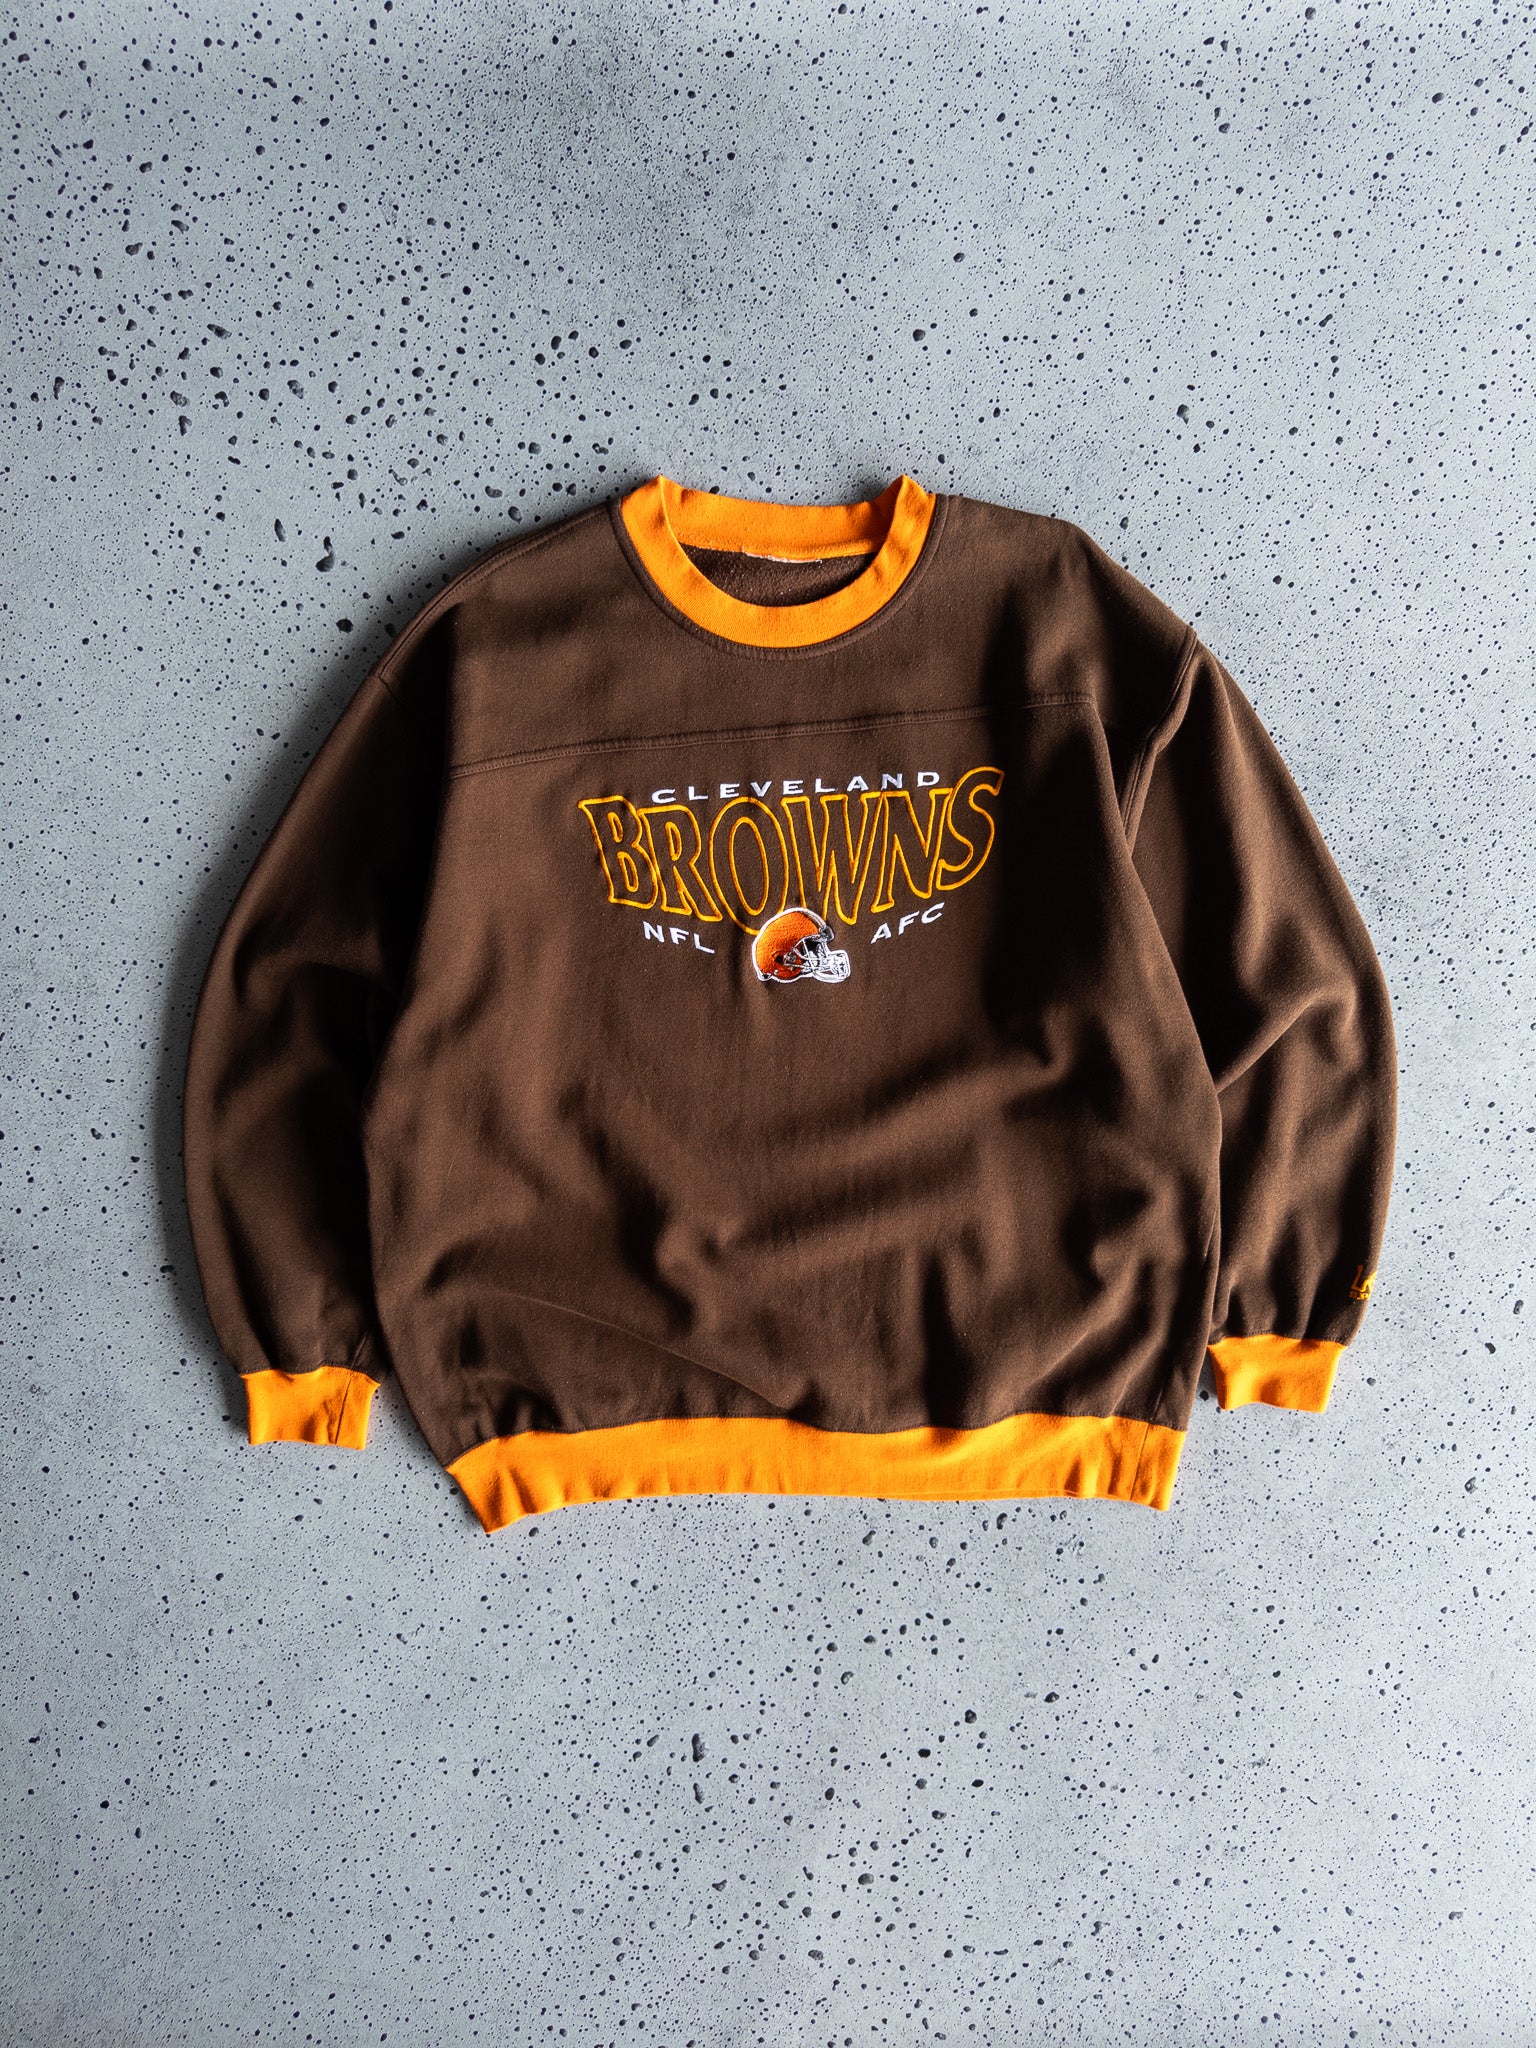 Vintage Cleveland Browns Sweatshirt (XL)